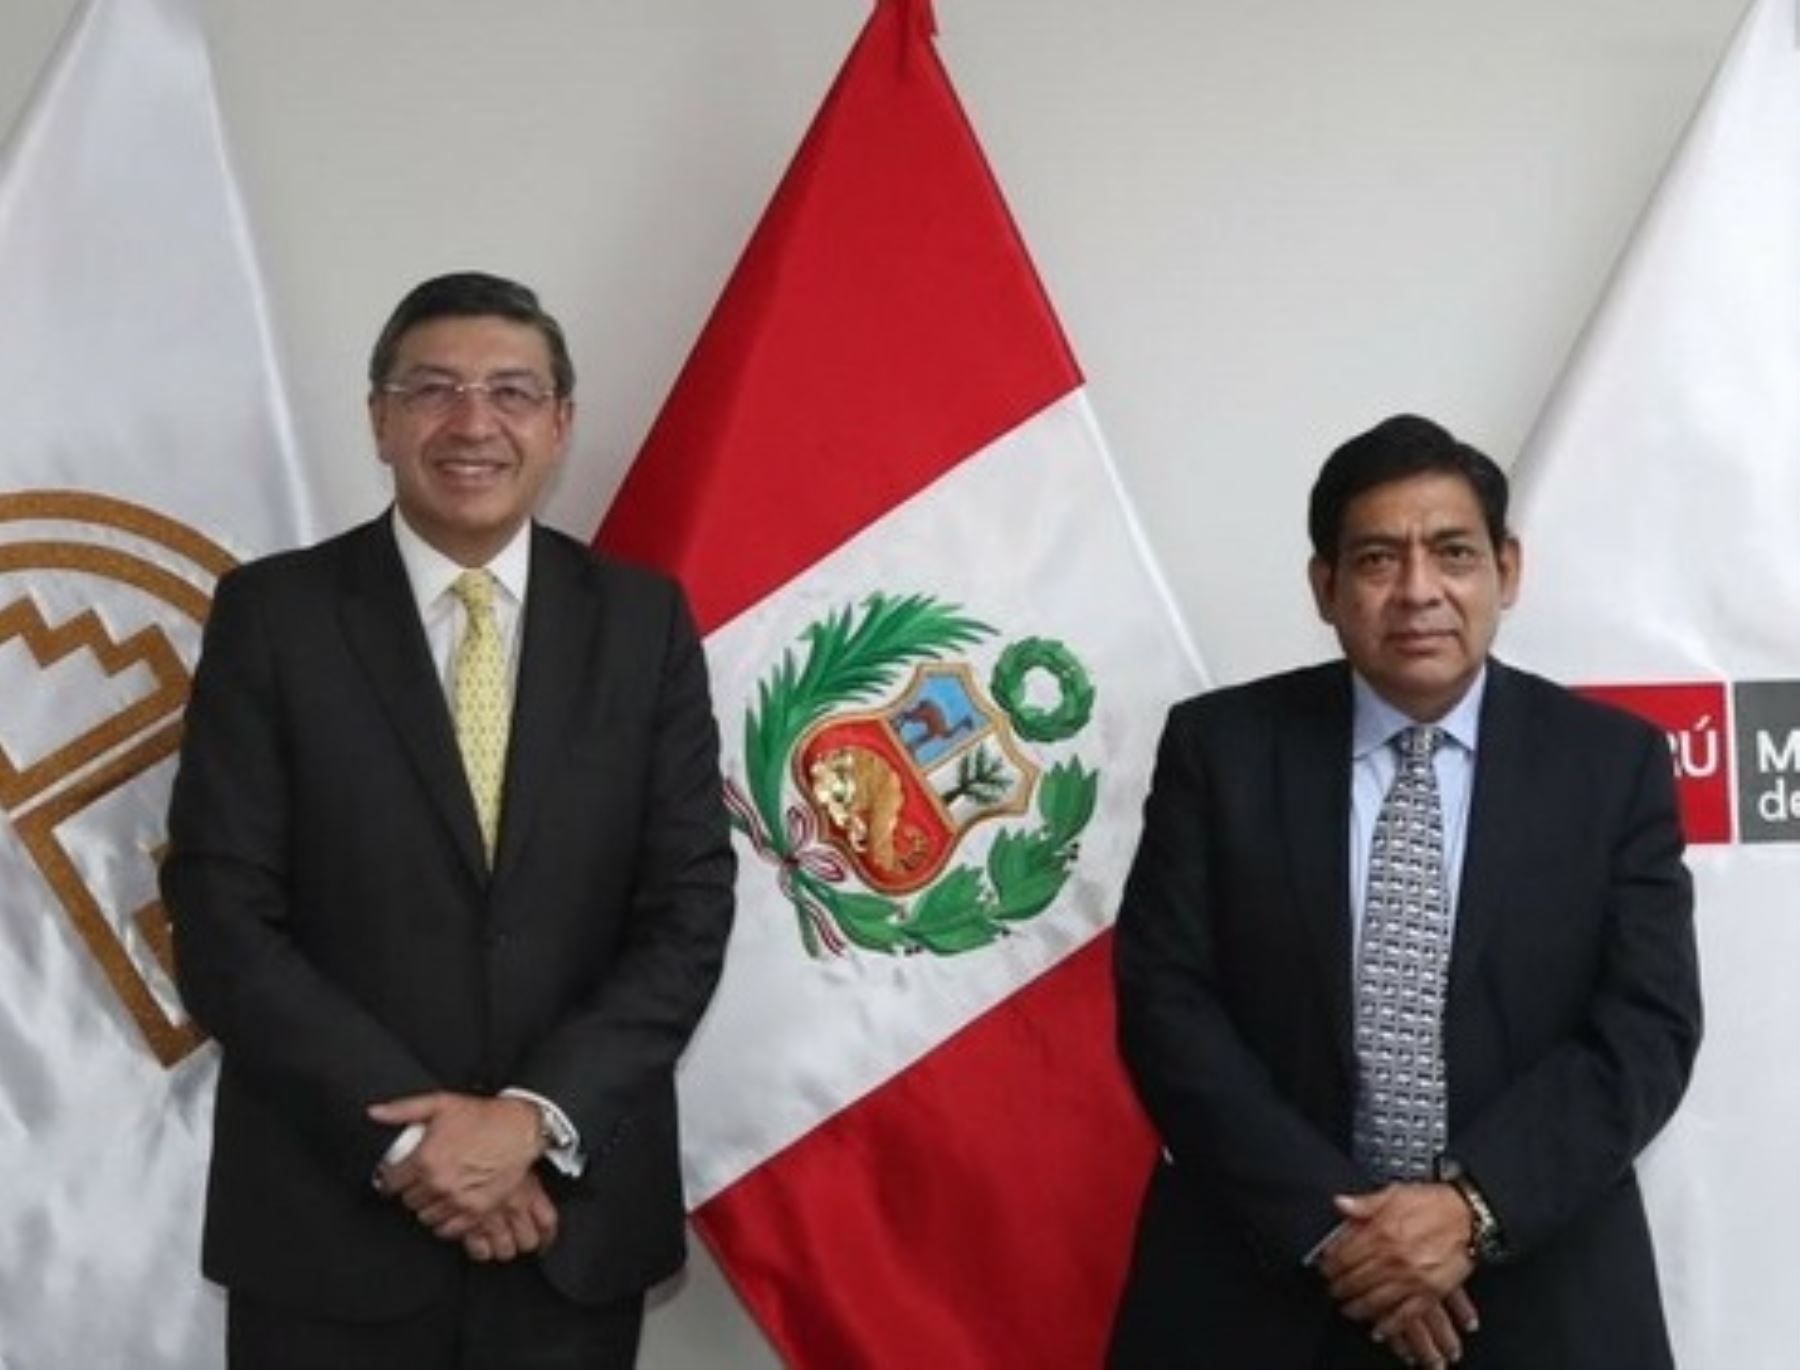 Perú impulsa el fortalecimiento de la agenda ambiental en la Comunidad Andina, destacó el Ministerio del Ambiente (Minam). ANDINA/Difusión